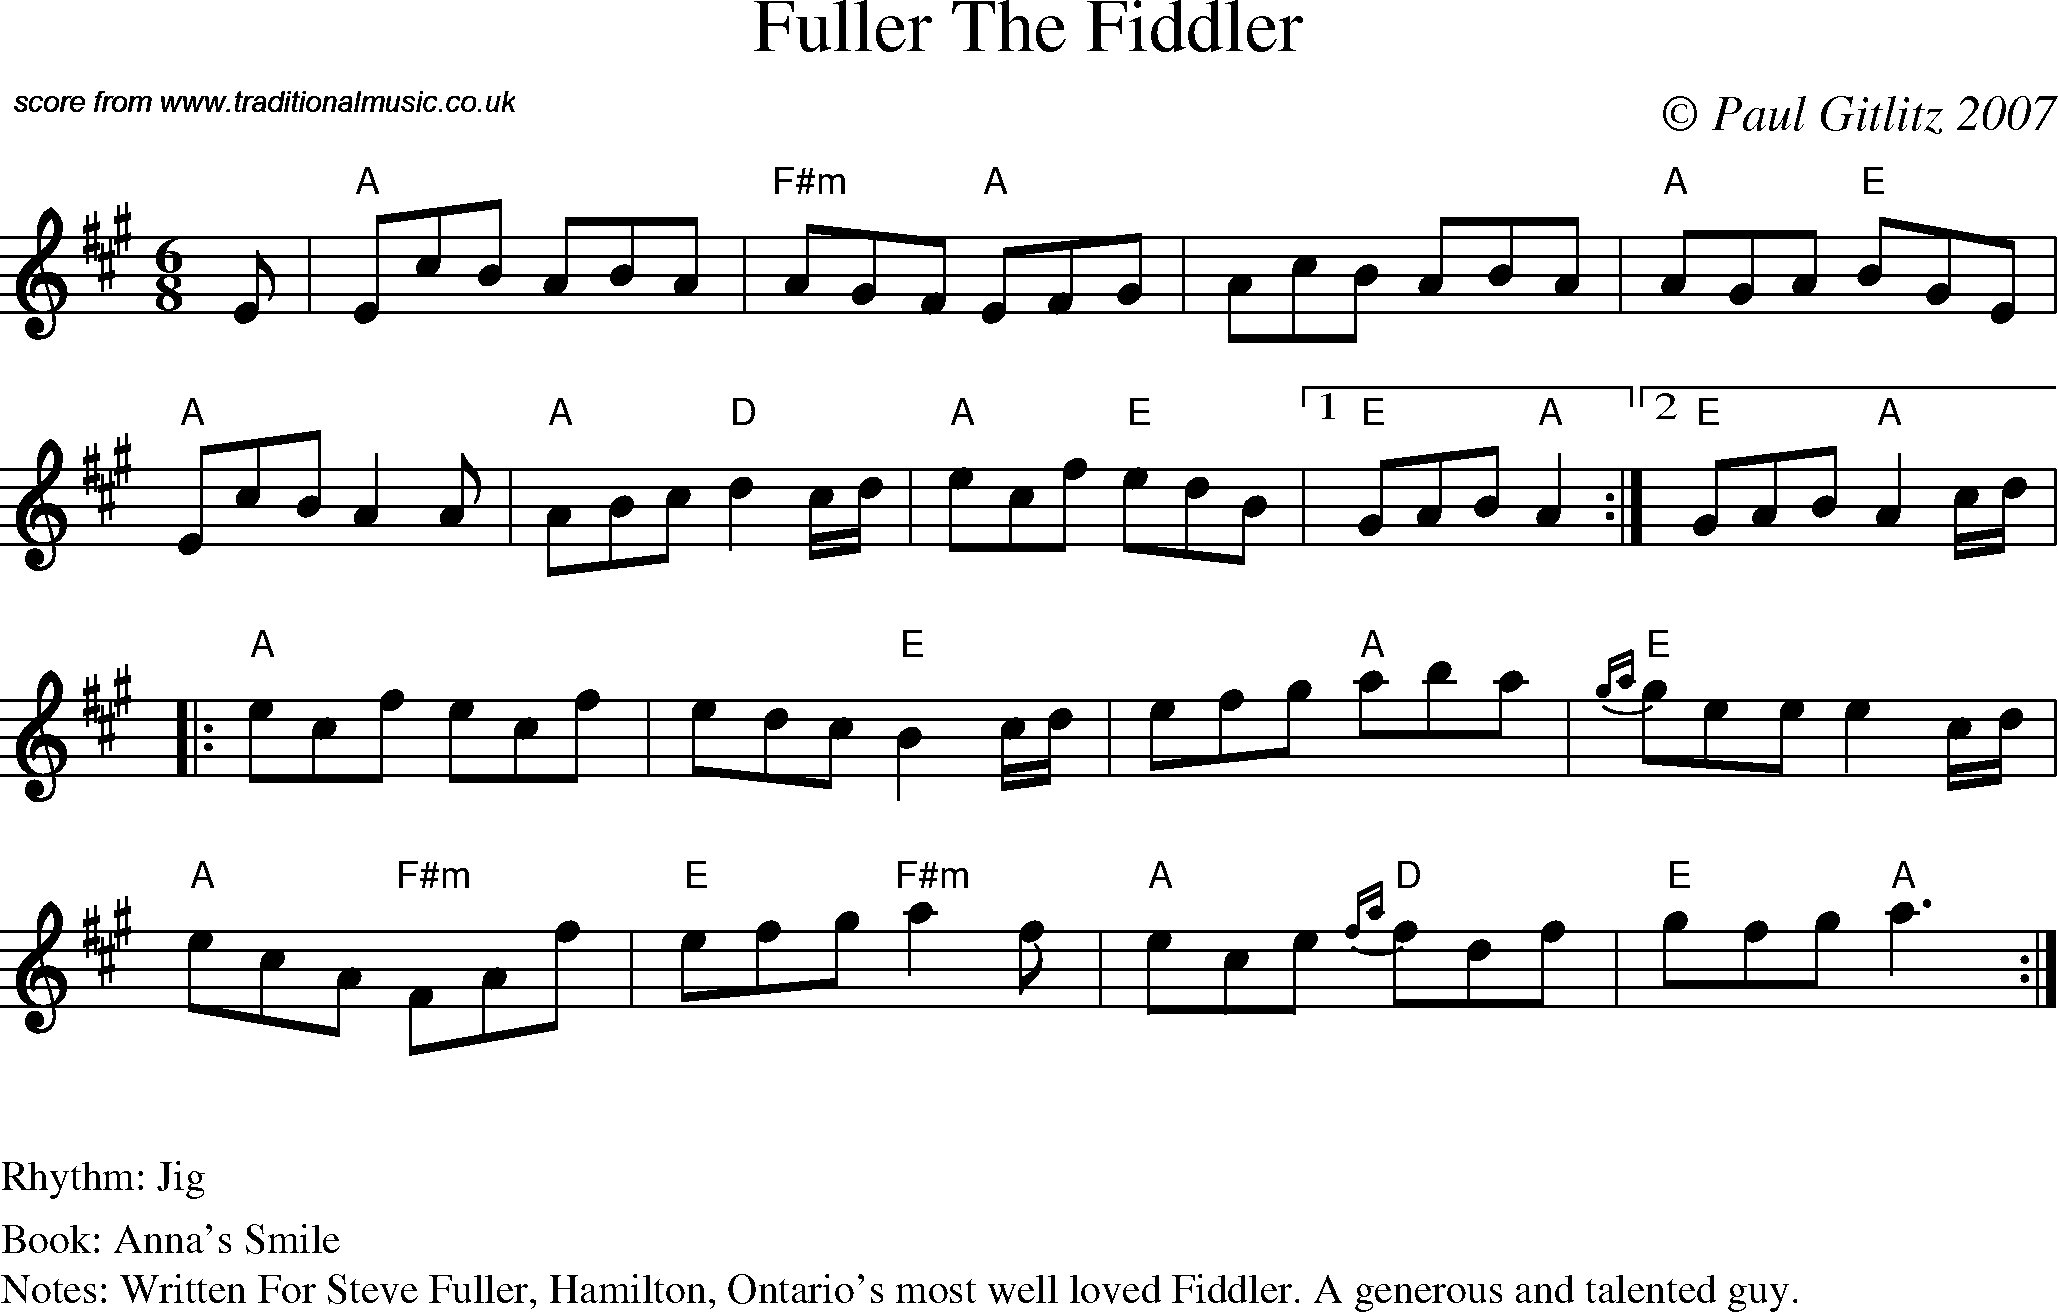 Sheet Music Score for Jig - Fuller the Fiddler